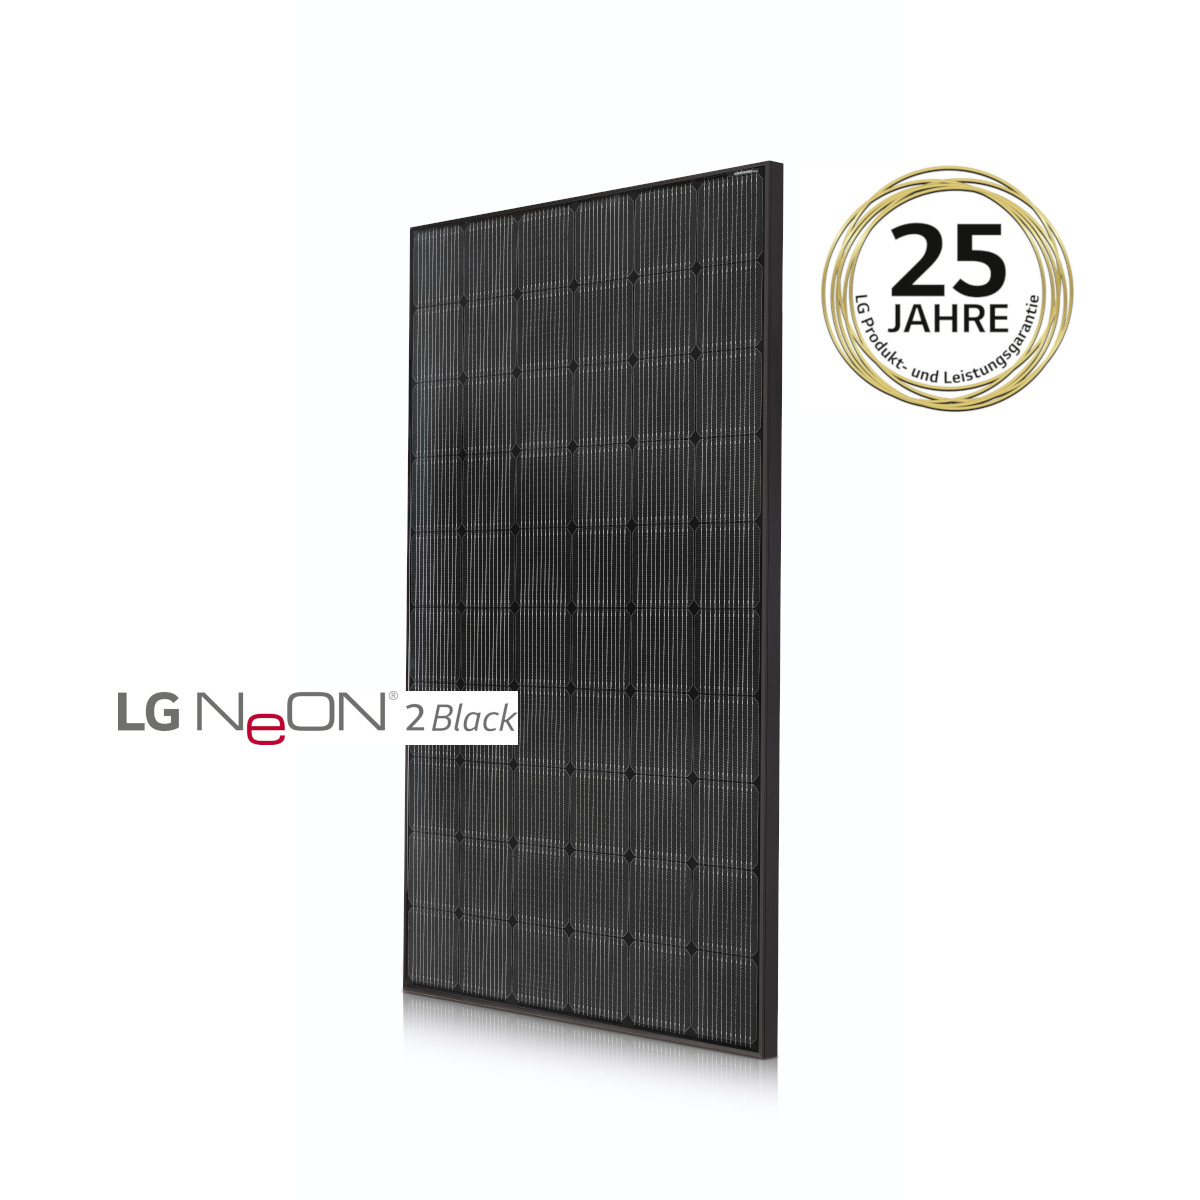 LG-Mono-Solarmodul - NeON2  LG340N1K-V5 full black